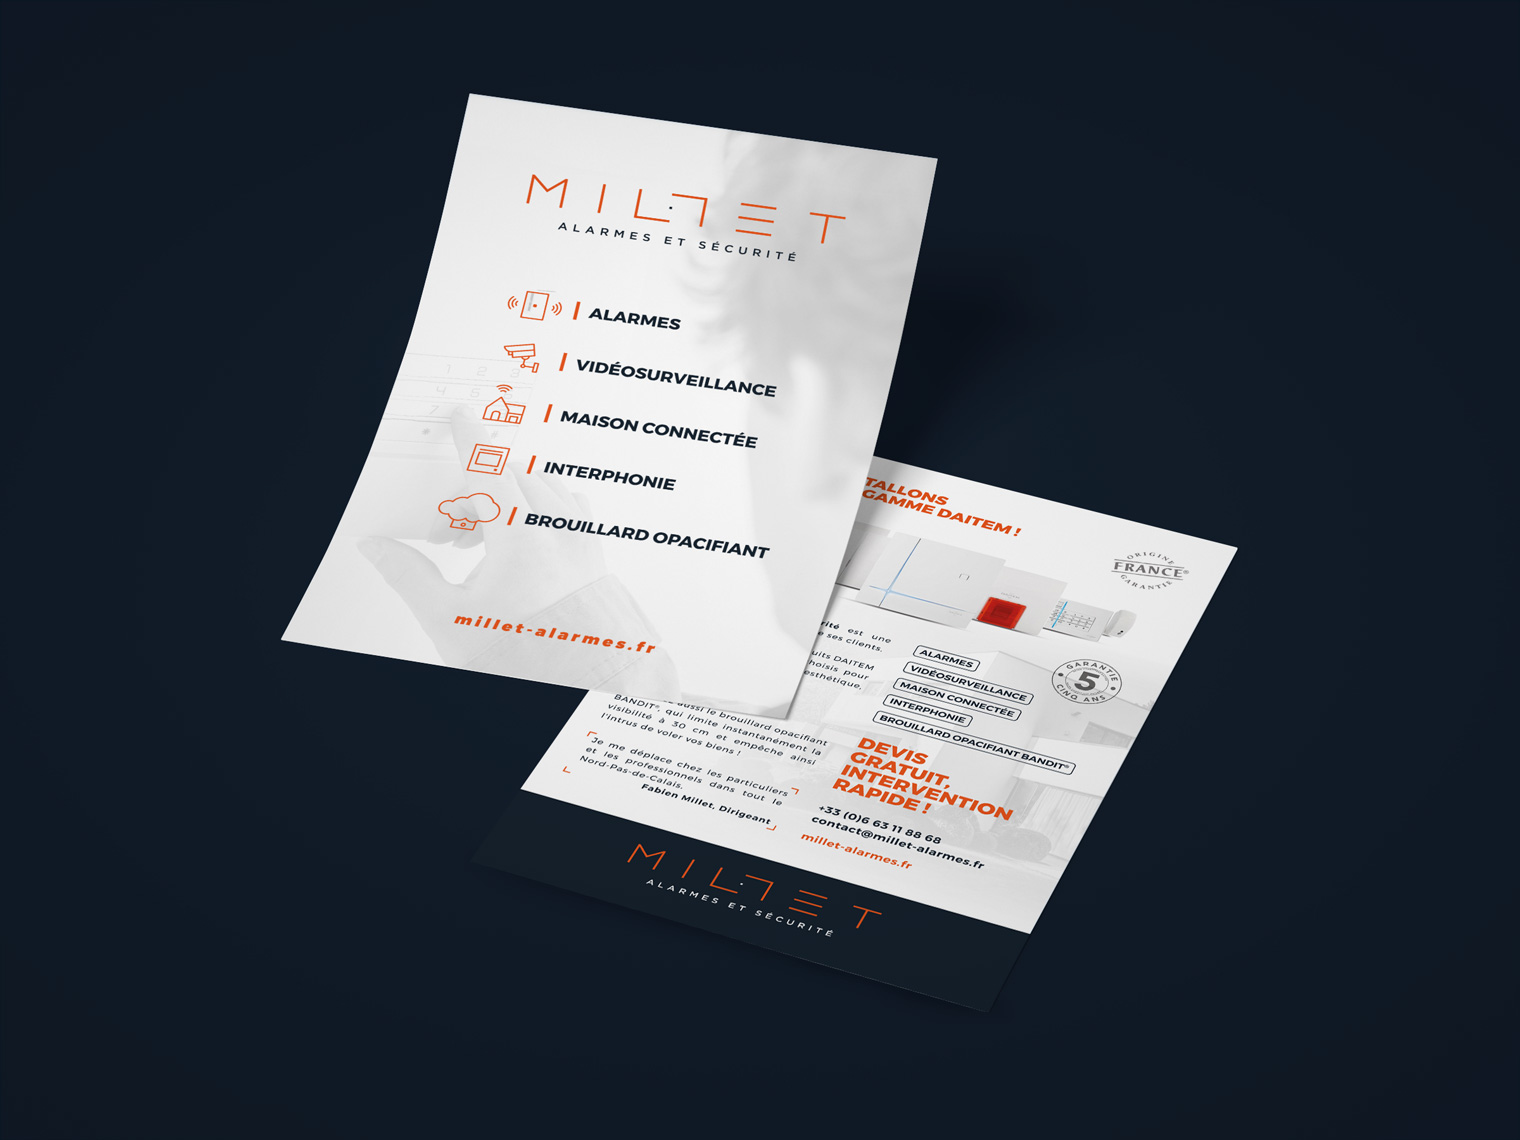 flyer 2017 Millet <br> alarmes et sécurité